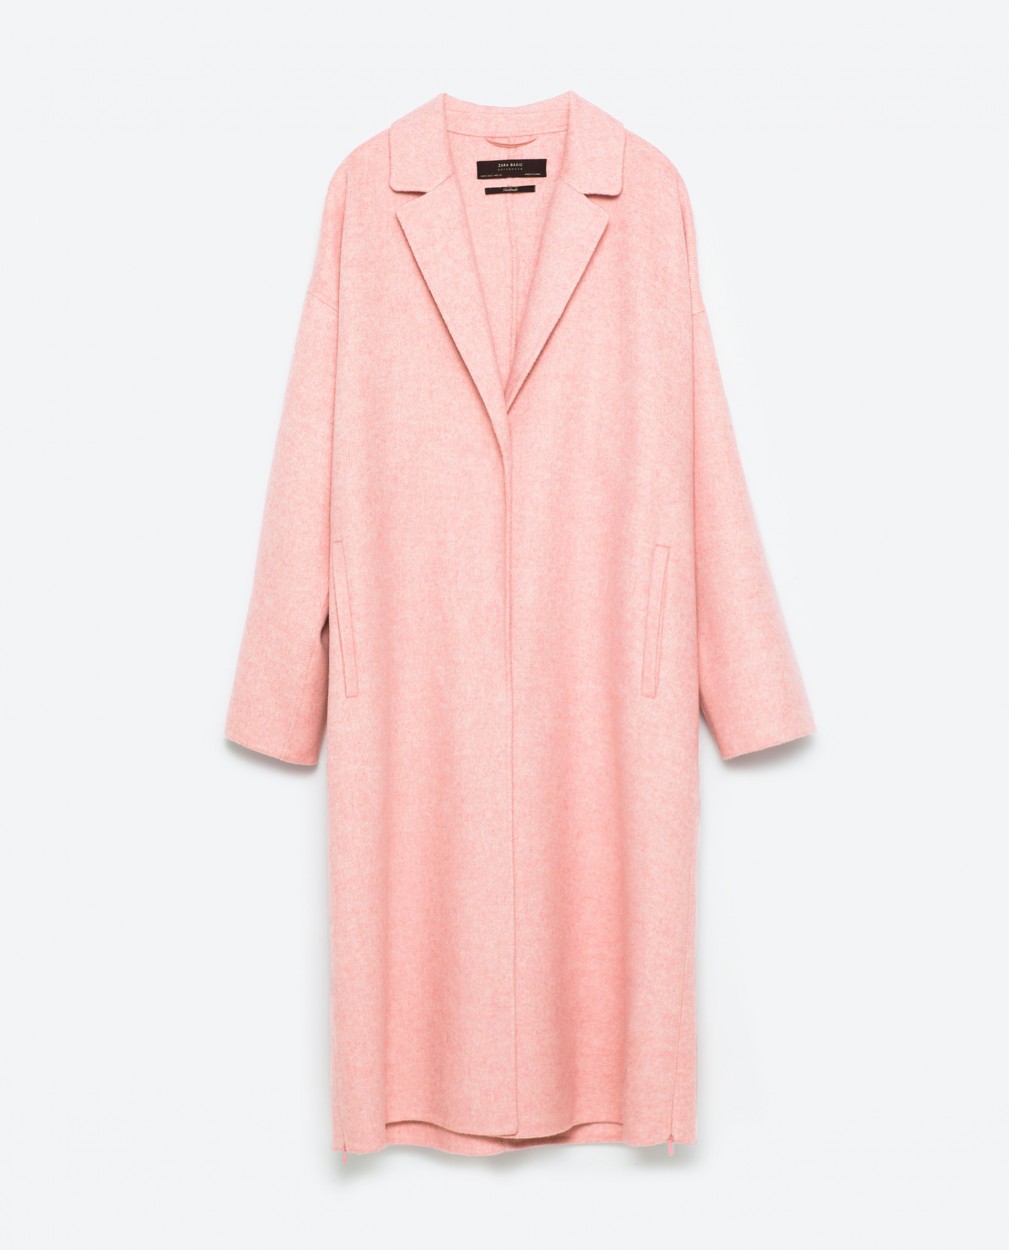 Zara cappotto rosa FW 16/17